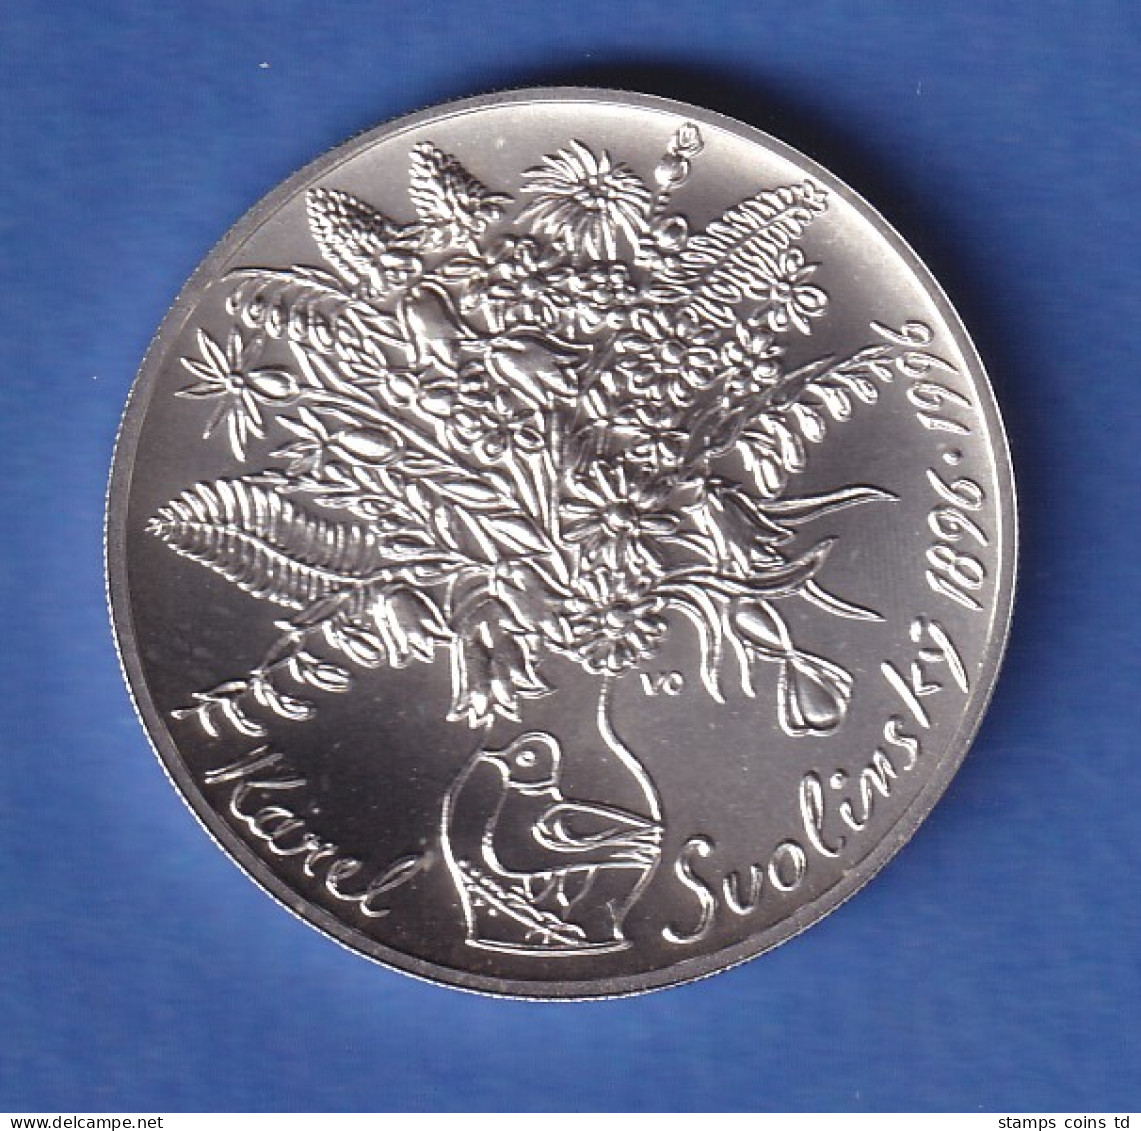 Tschechien 1996 Silbermünze 200 Kronen 100. Geburtstag Von Karel Svolinský Stg - Czech Republic